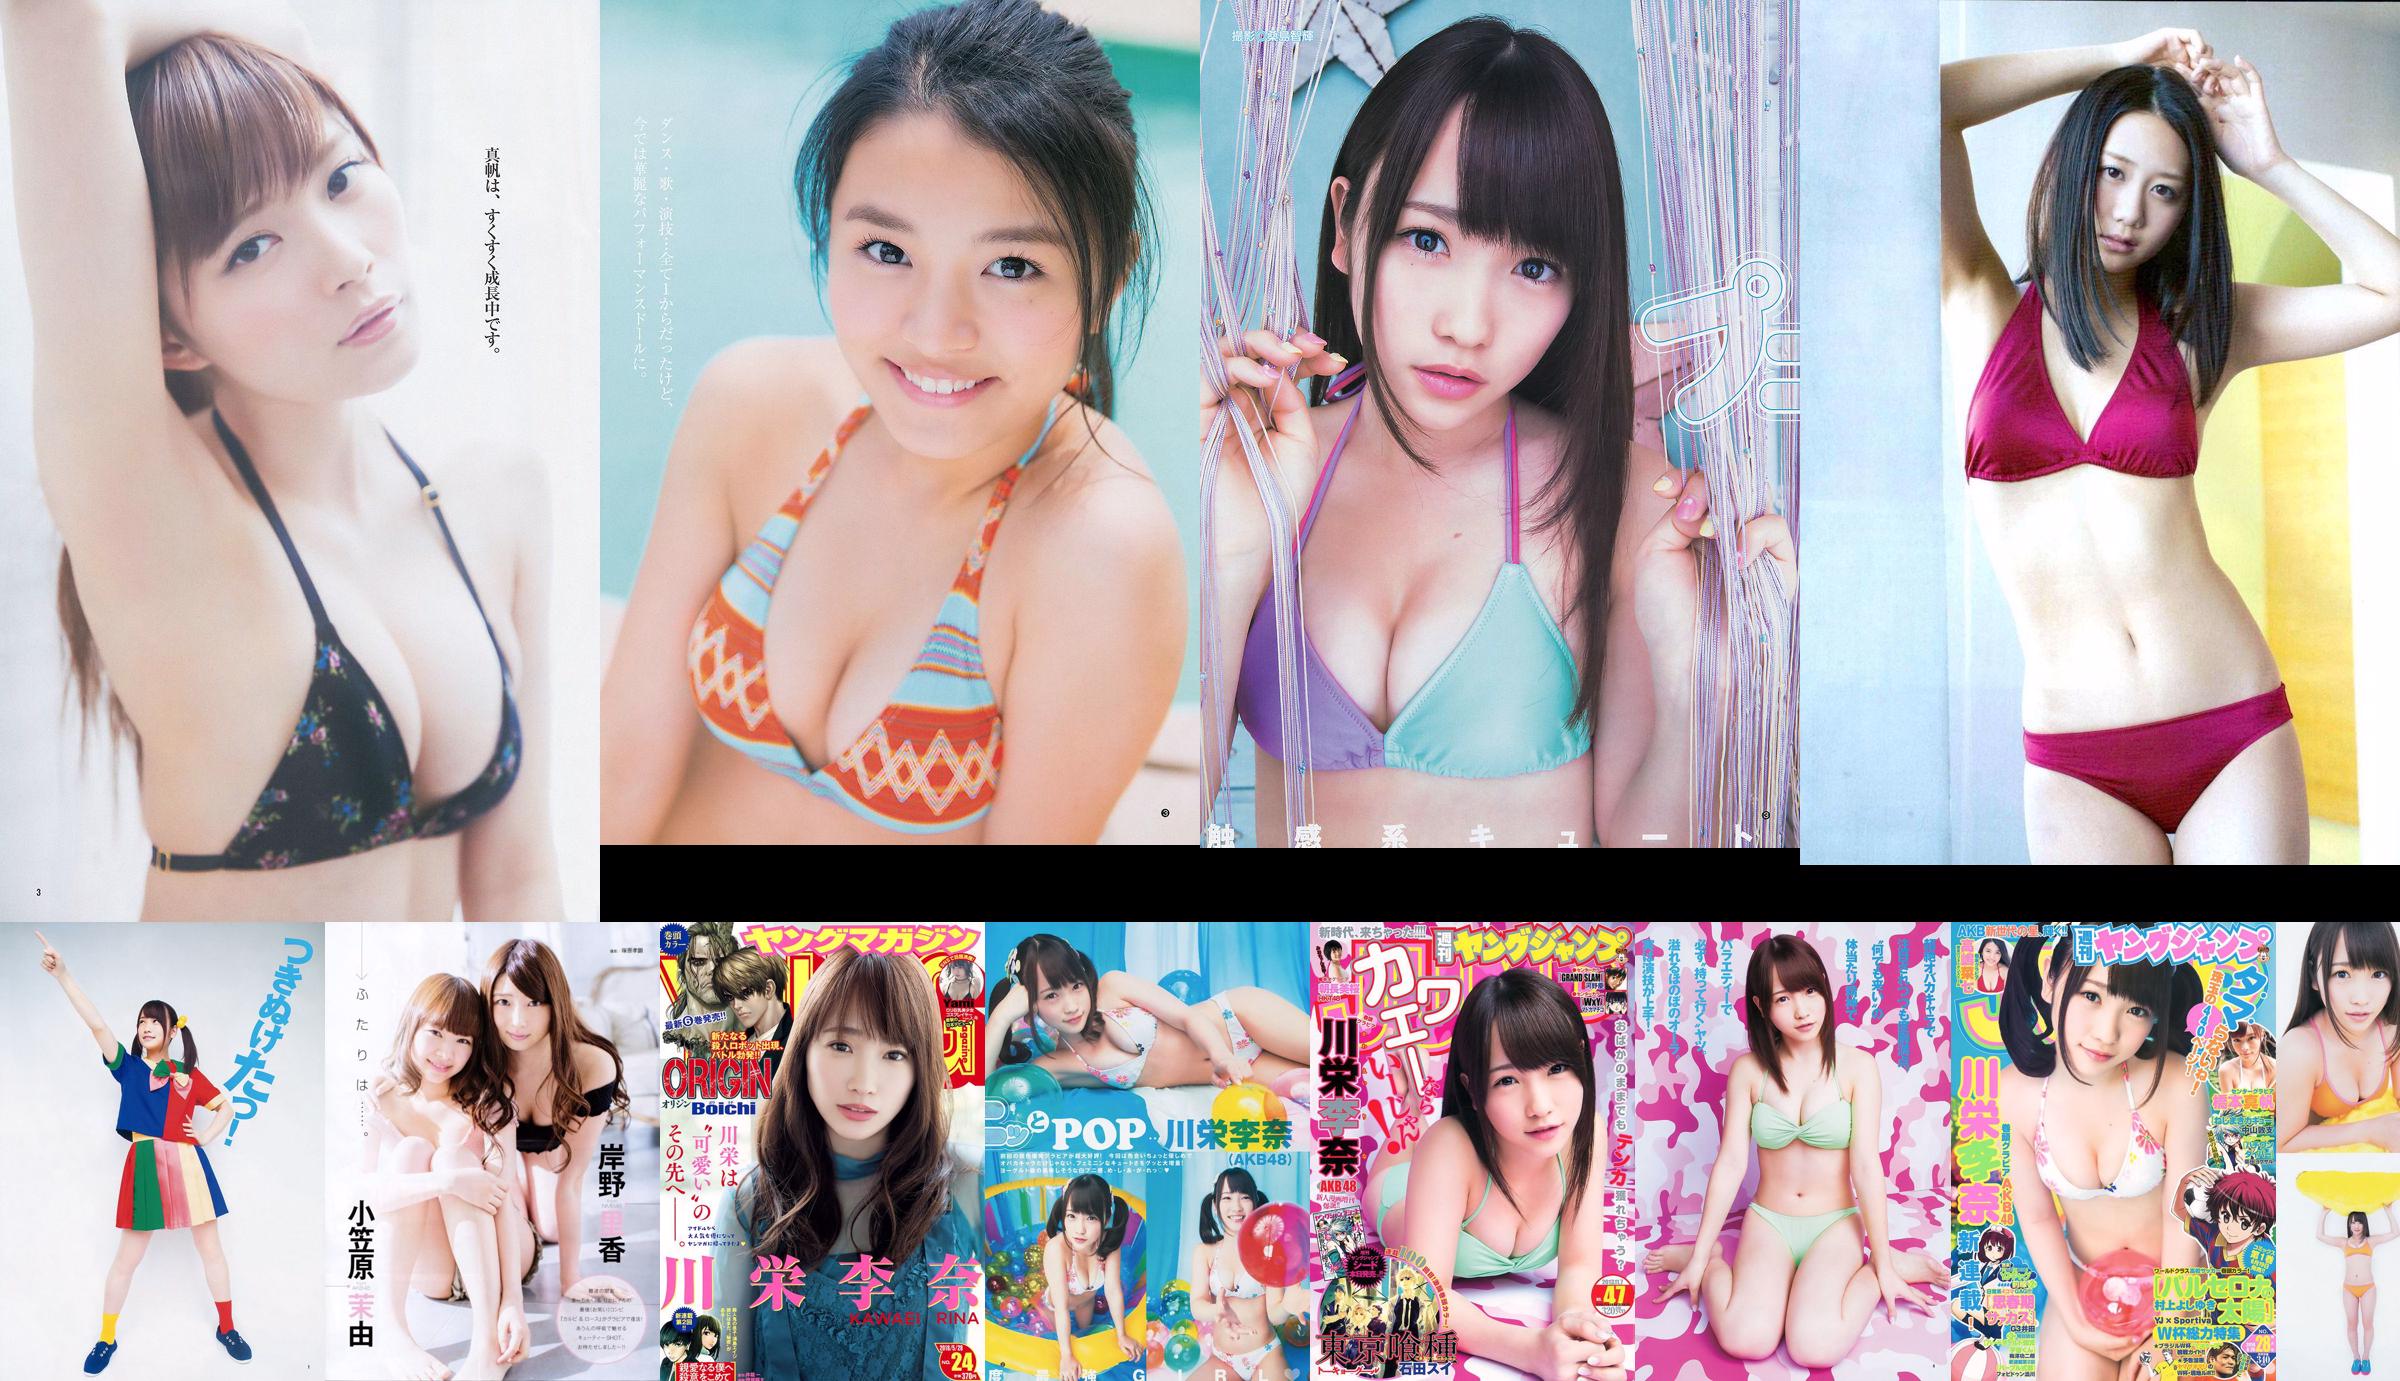 [ENTAME] Kawaei Rina Furuhata Naka e Kishino Rika junho de 2014 Photo Magazine No.80b364 Página 2